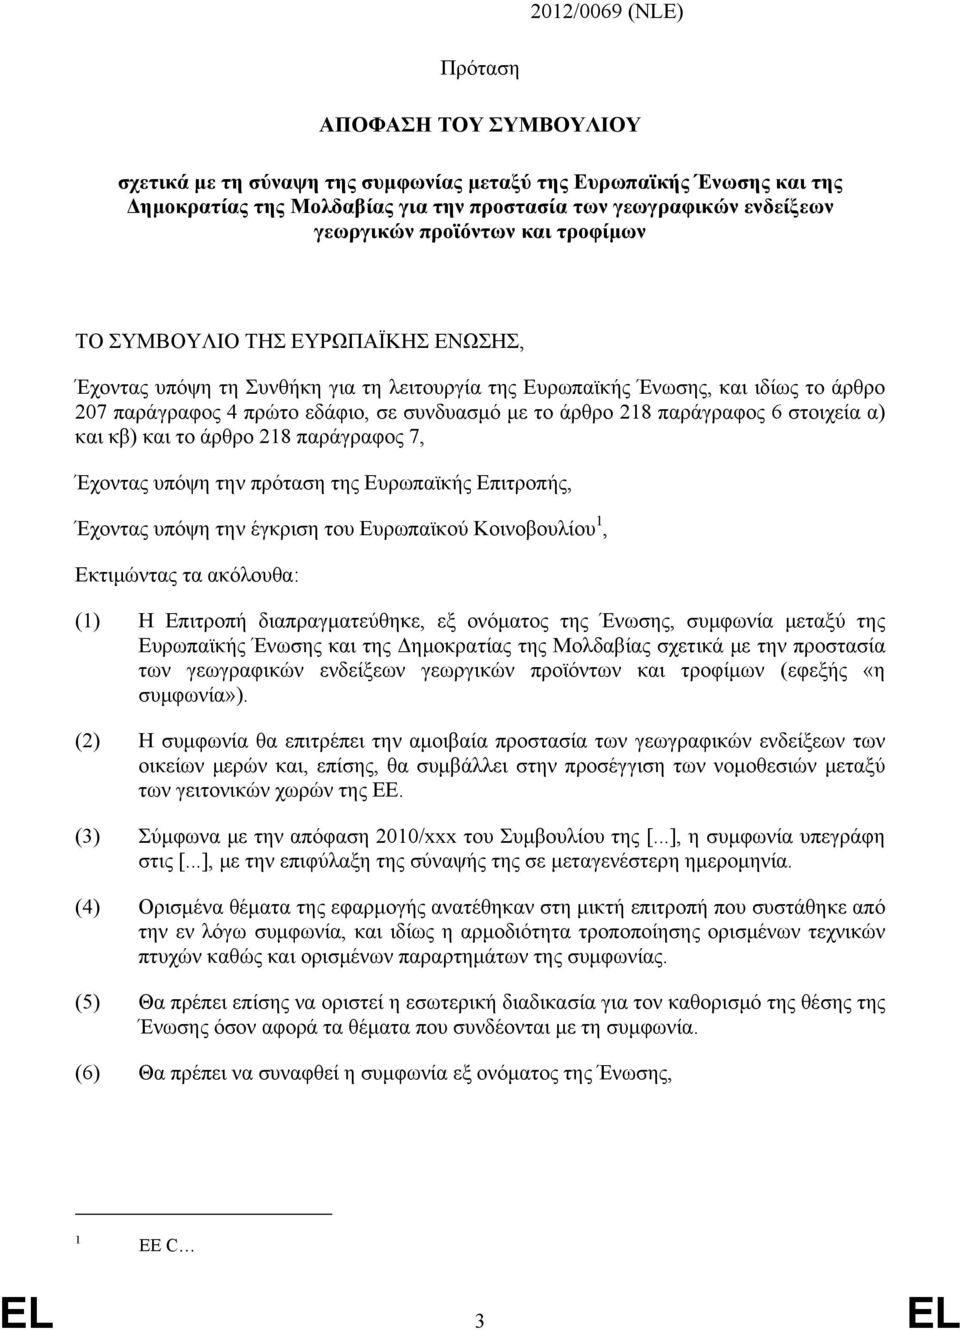 218 παράγραφος 6 στοιχεία α) και κβ) και το άρθρο 218 παράγραφος 7, Έχοντας υπόψη την πρόταση της Ευρωπαϊκής Επιτροπής, Έχοντας υπόψη την έγκριση του Ευρωπαϊκού Κοινοβουλίου 1, Εκτιμώντας τα